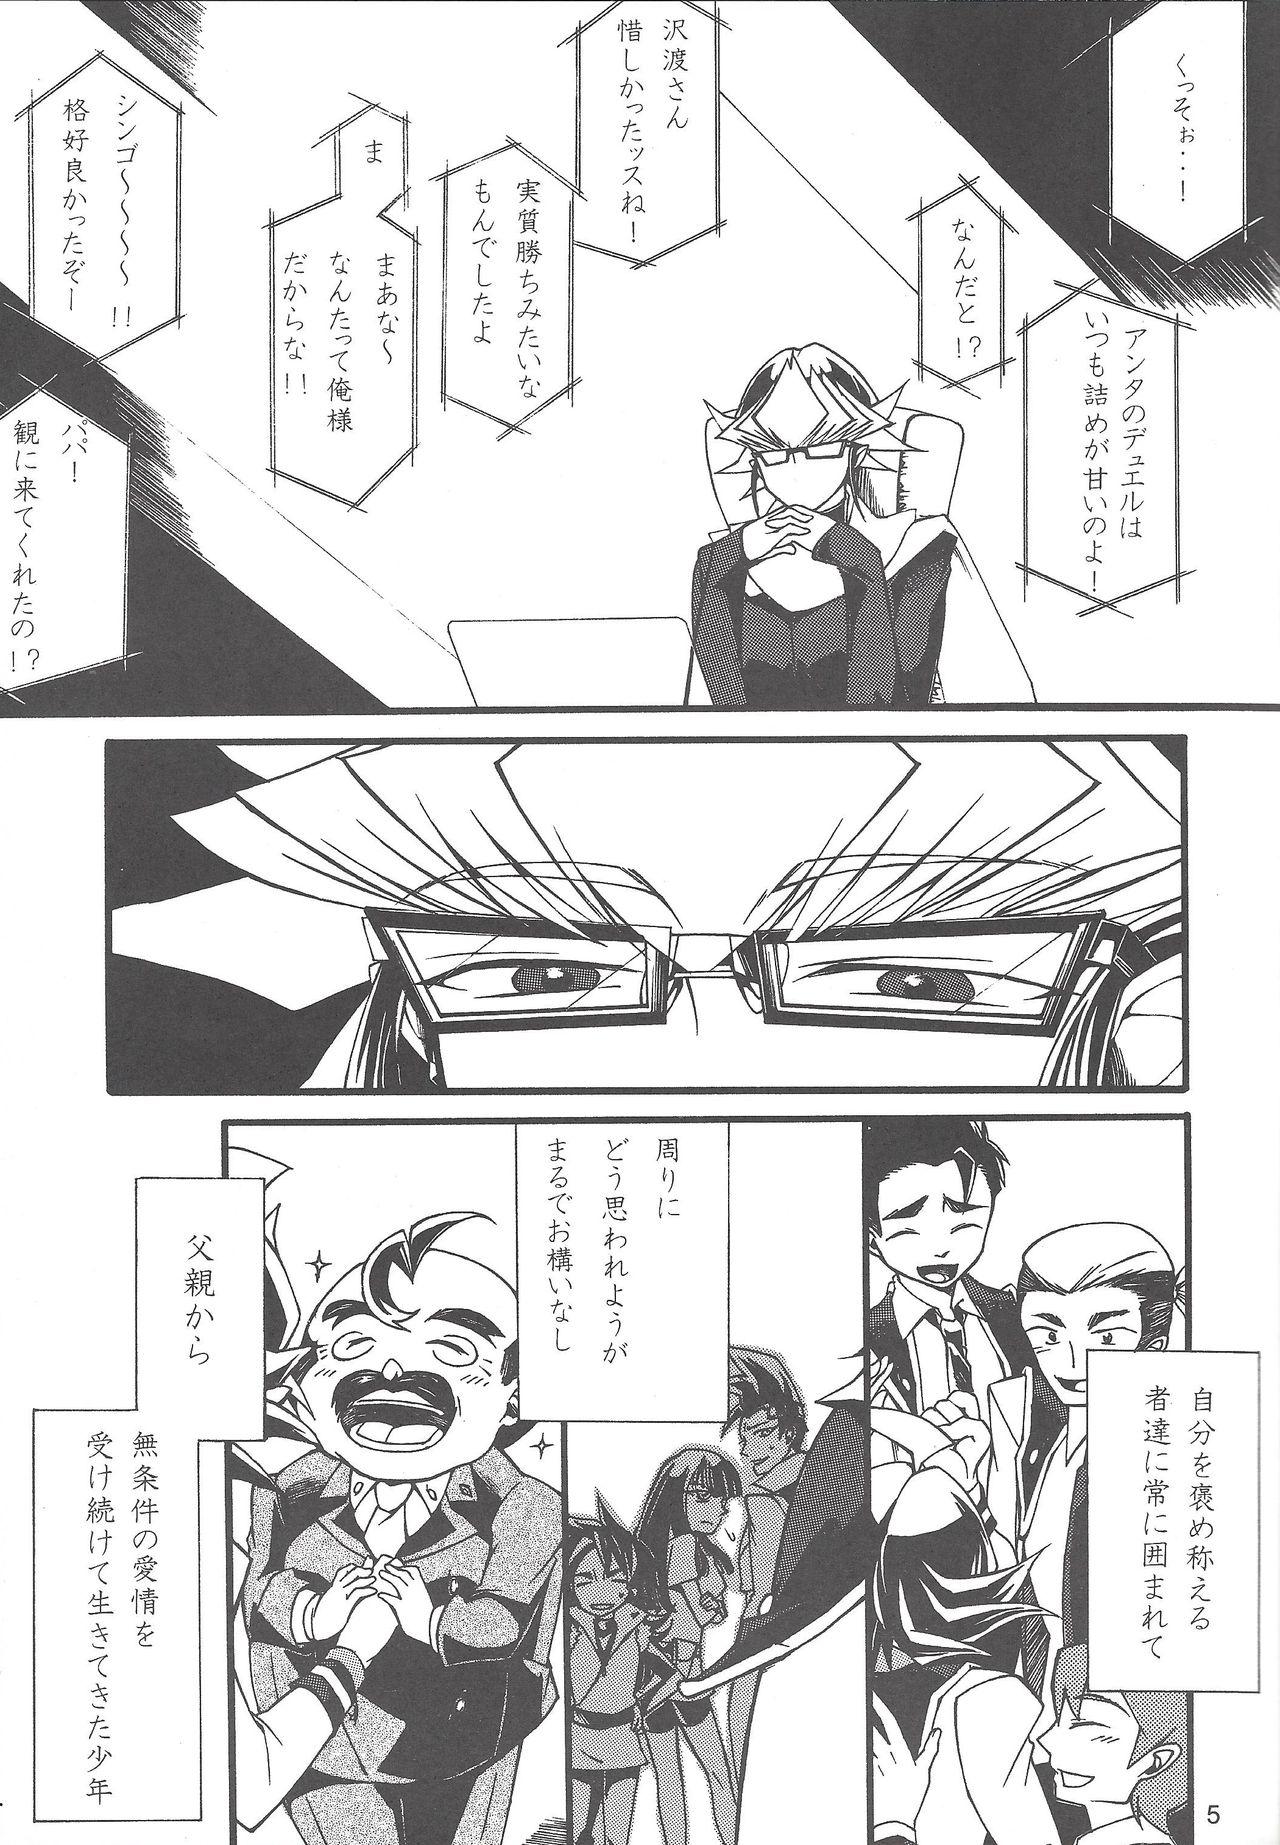 Passivo Uso-tsuki akuma no koi - Yu-gi-oh arc-v Jeune Mec - Page 4